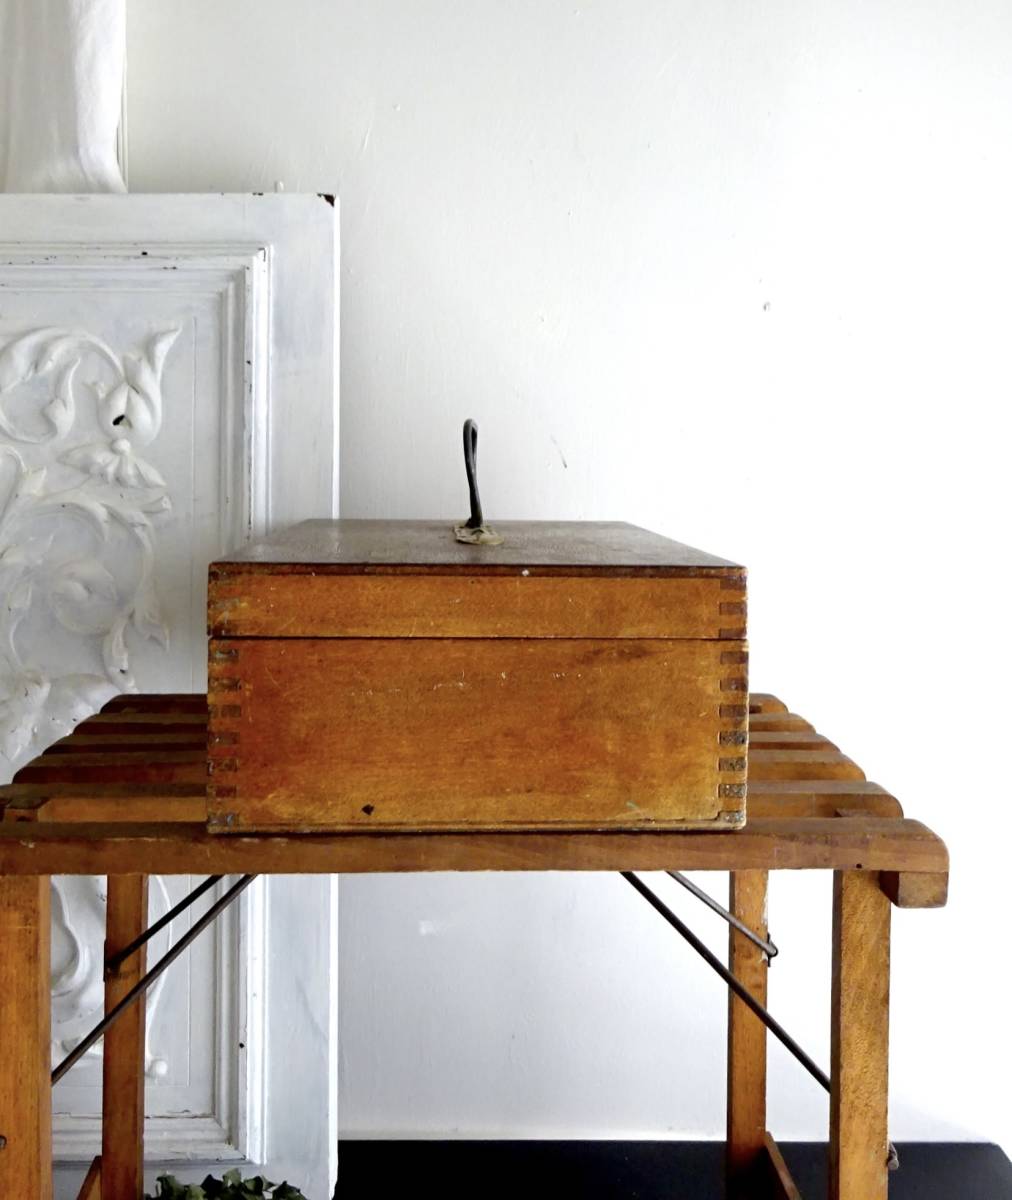 20 век Франция дерево коробка box кейс для хранения контейнер тарелка . предмет горшок орнамент тарелка керамика .. антиквариат старый инструмент изобразительное искусство шитье античный 